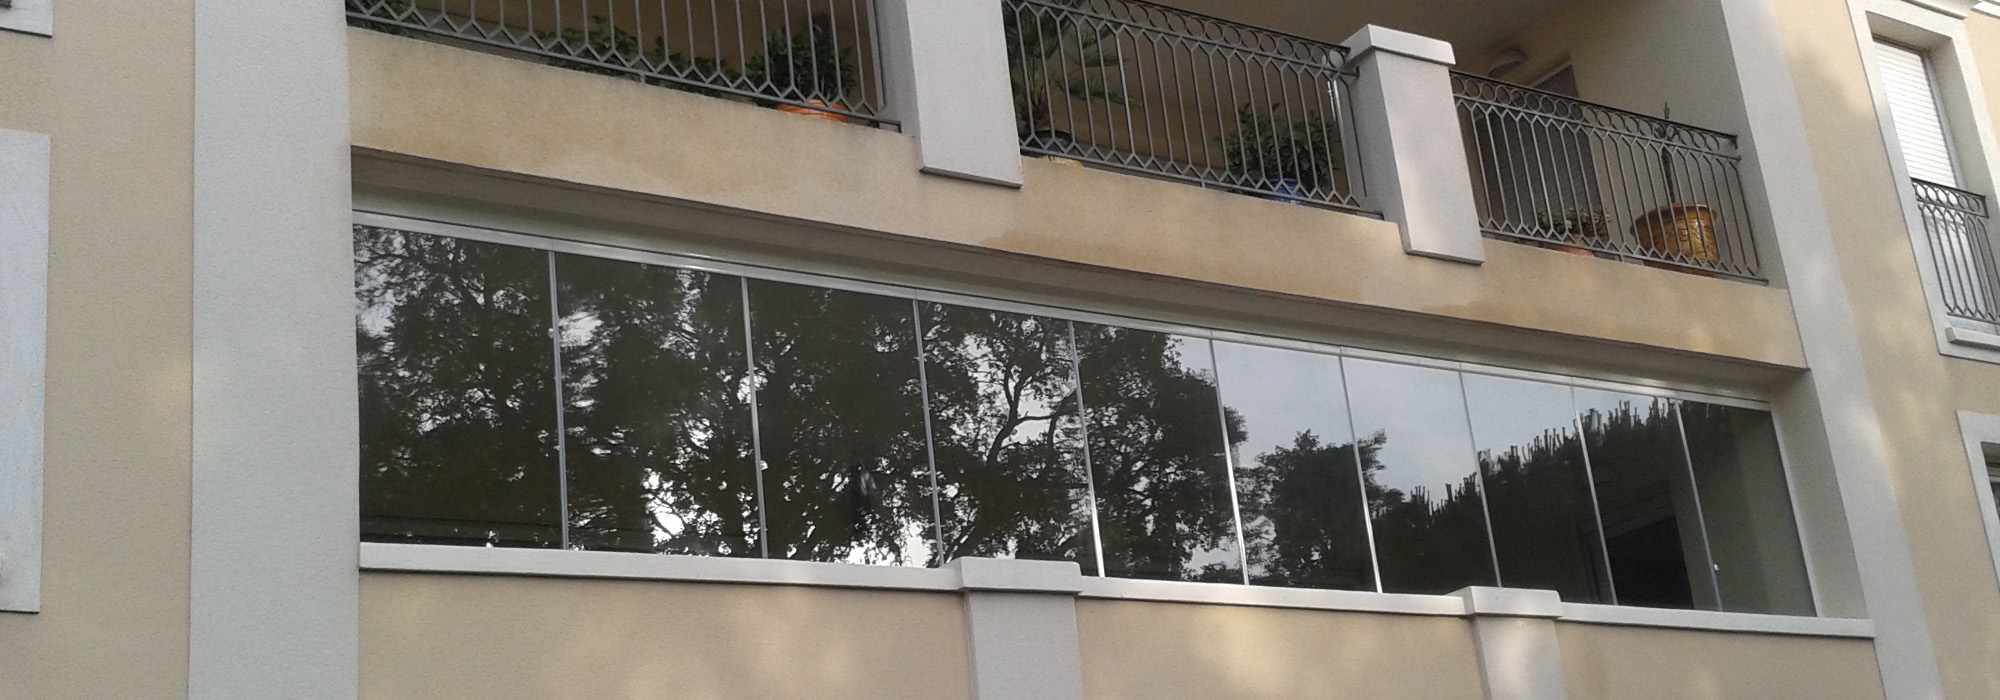 Fermeture en verre pour balcon en copropriété